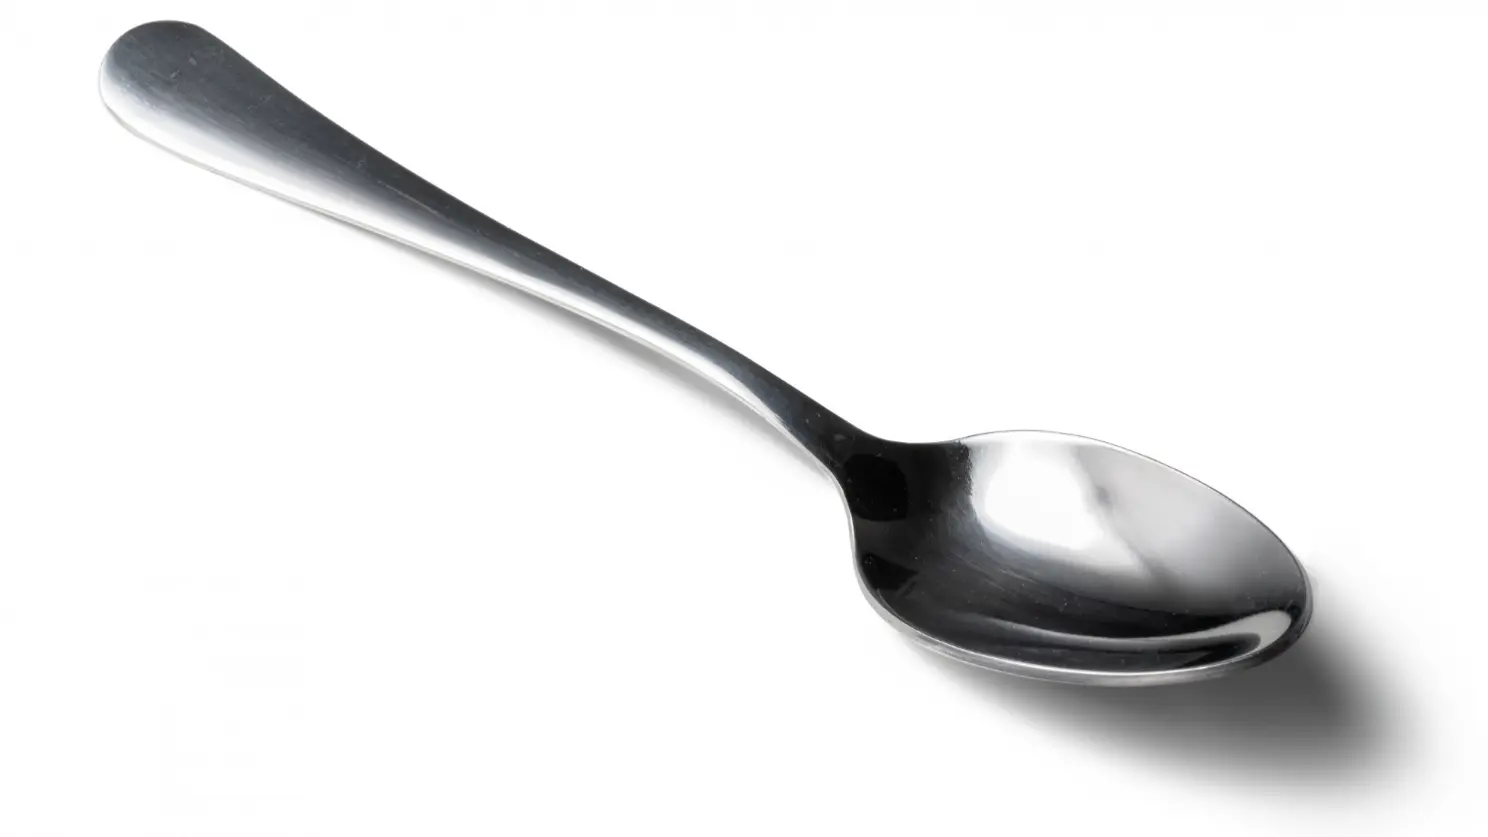 1 teaspoon